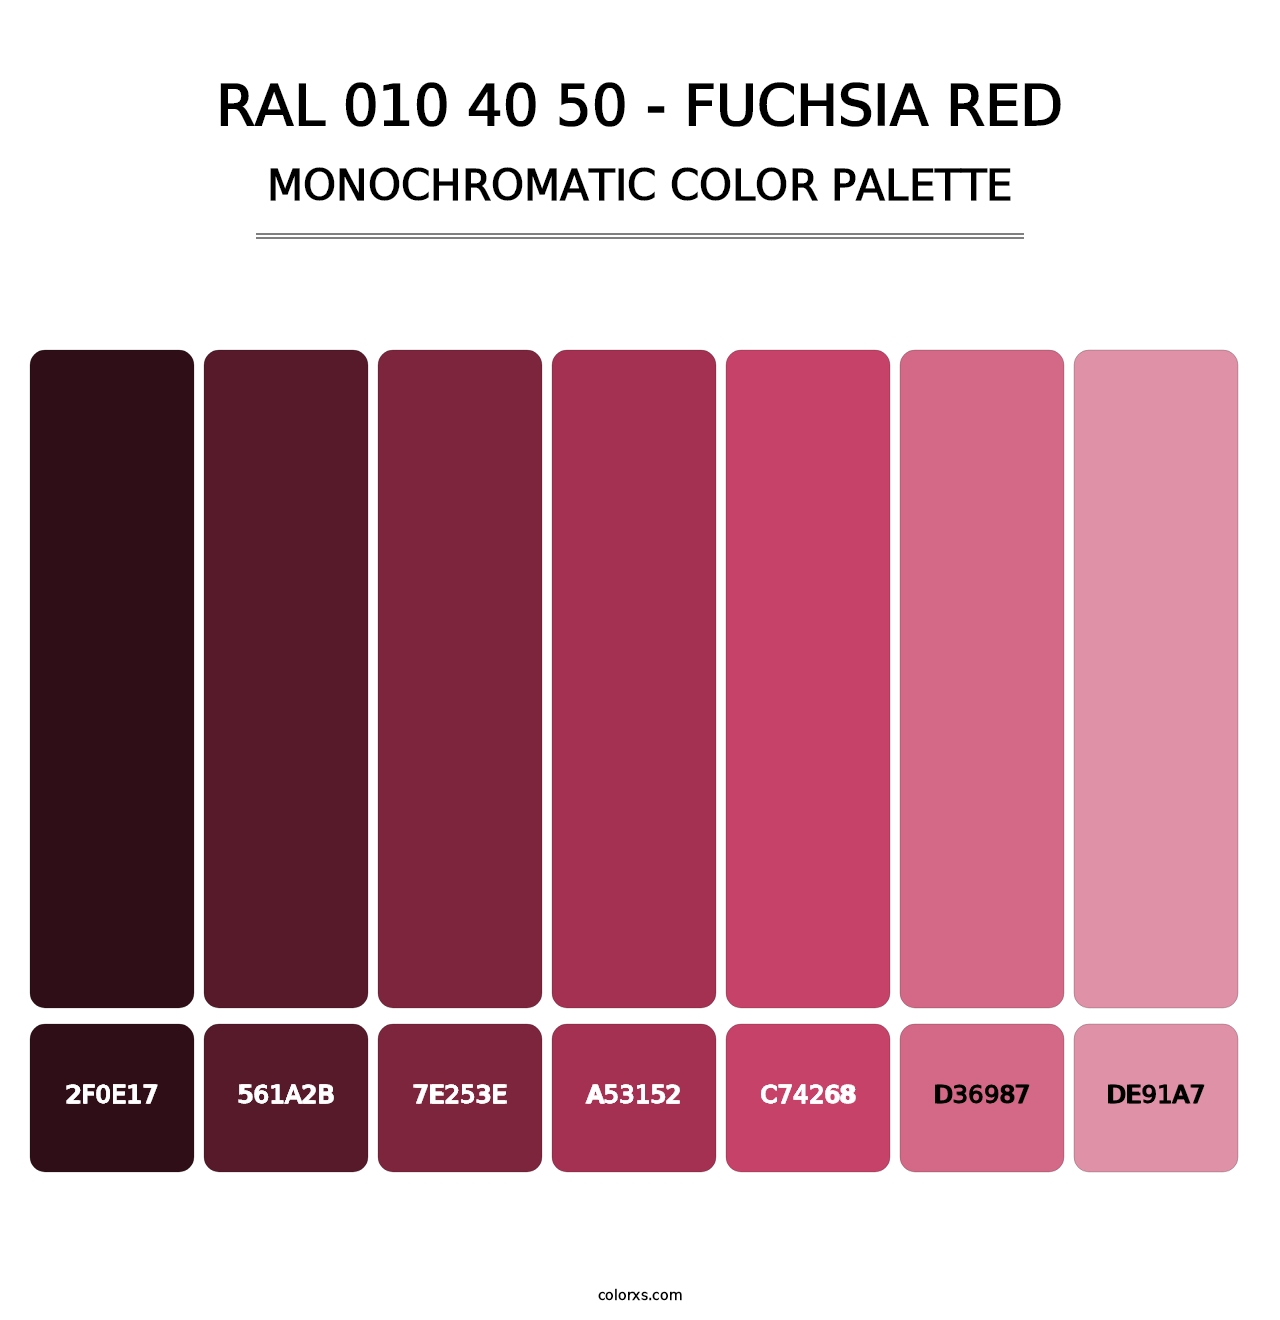 RAL 010 40 50 - Fuchsia Red - Monochromatic Color Palette